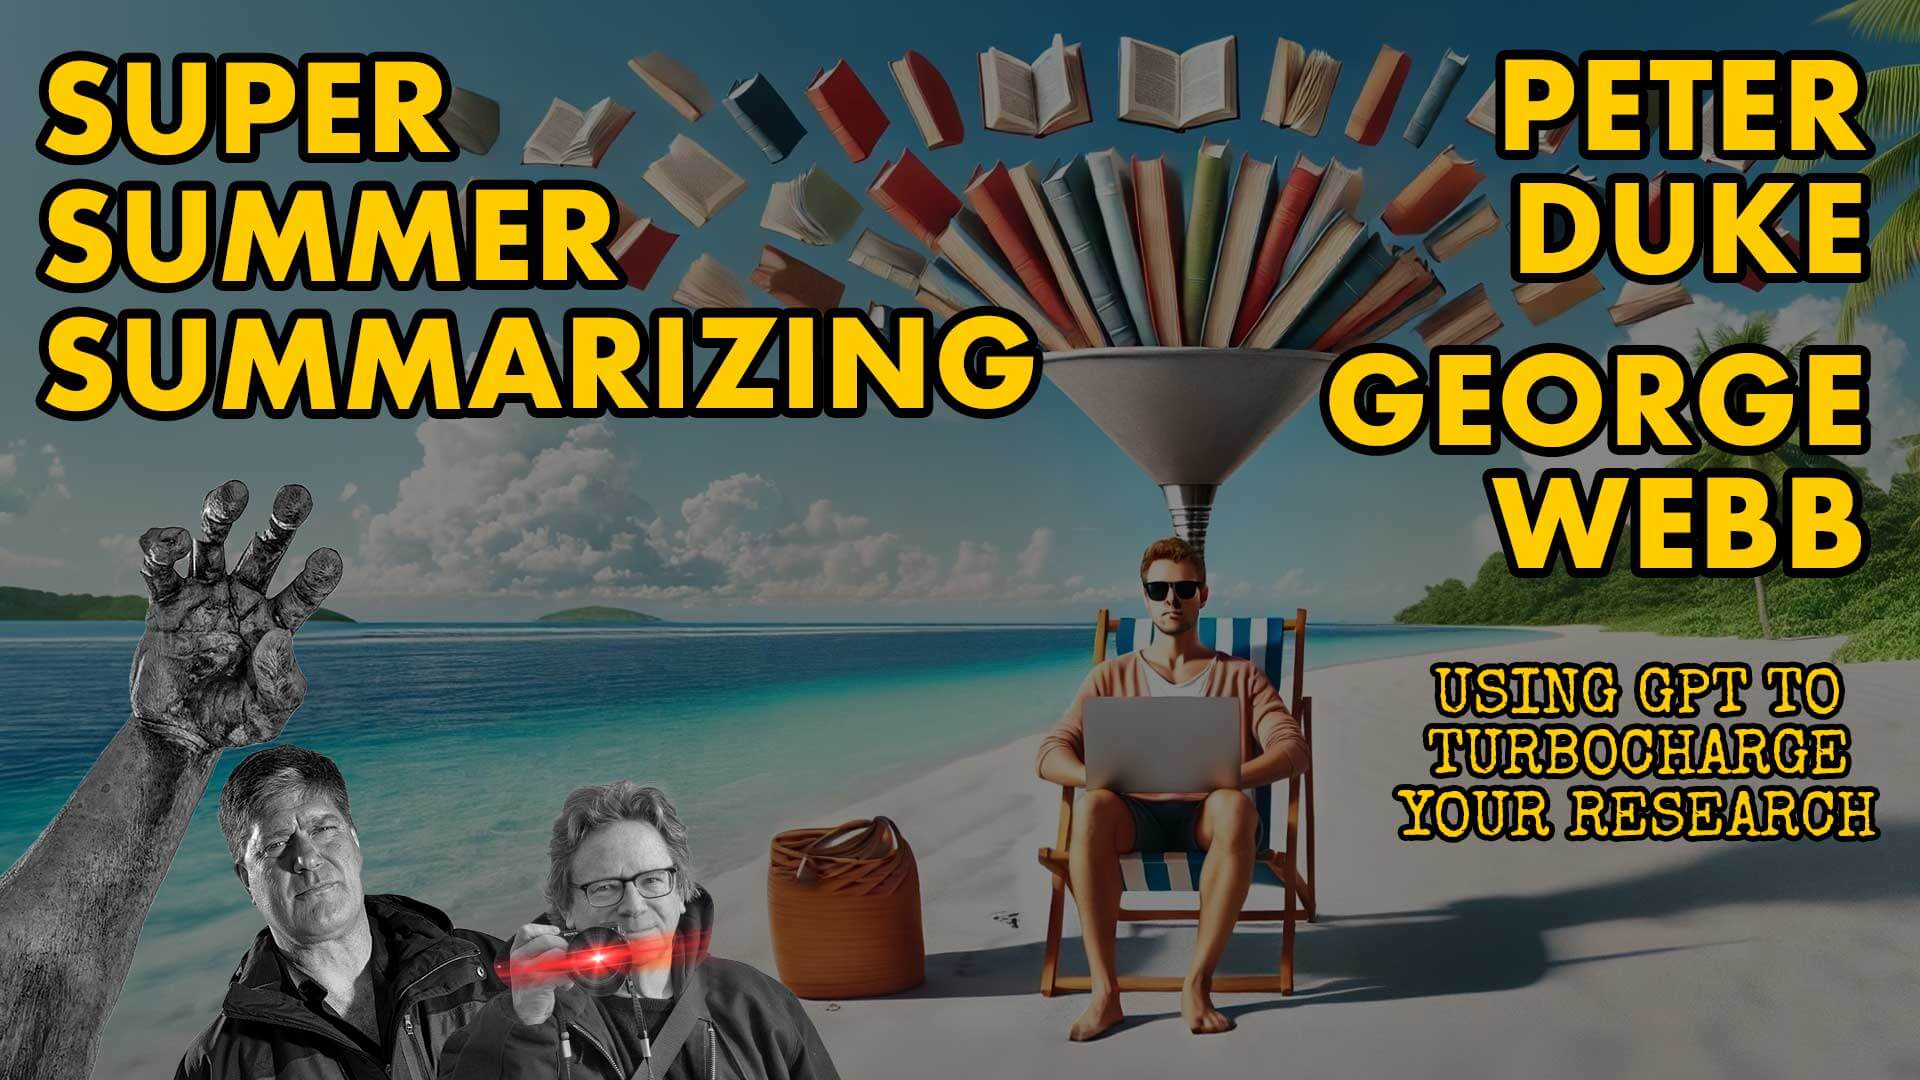 Super Summer Summarizing ~ George Webb & Peter Duke